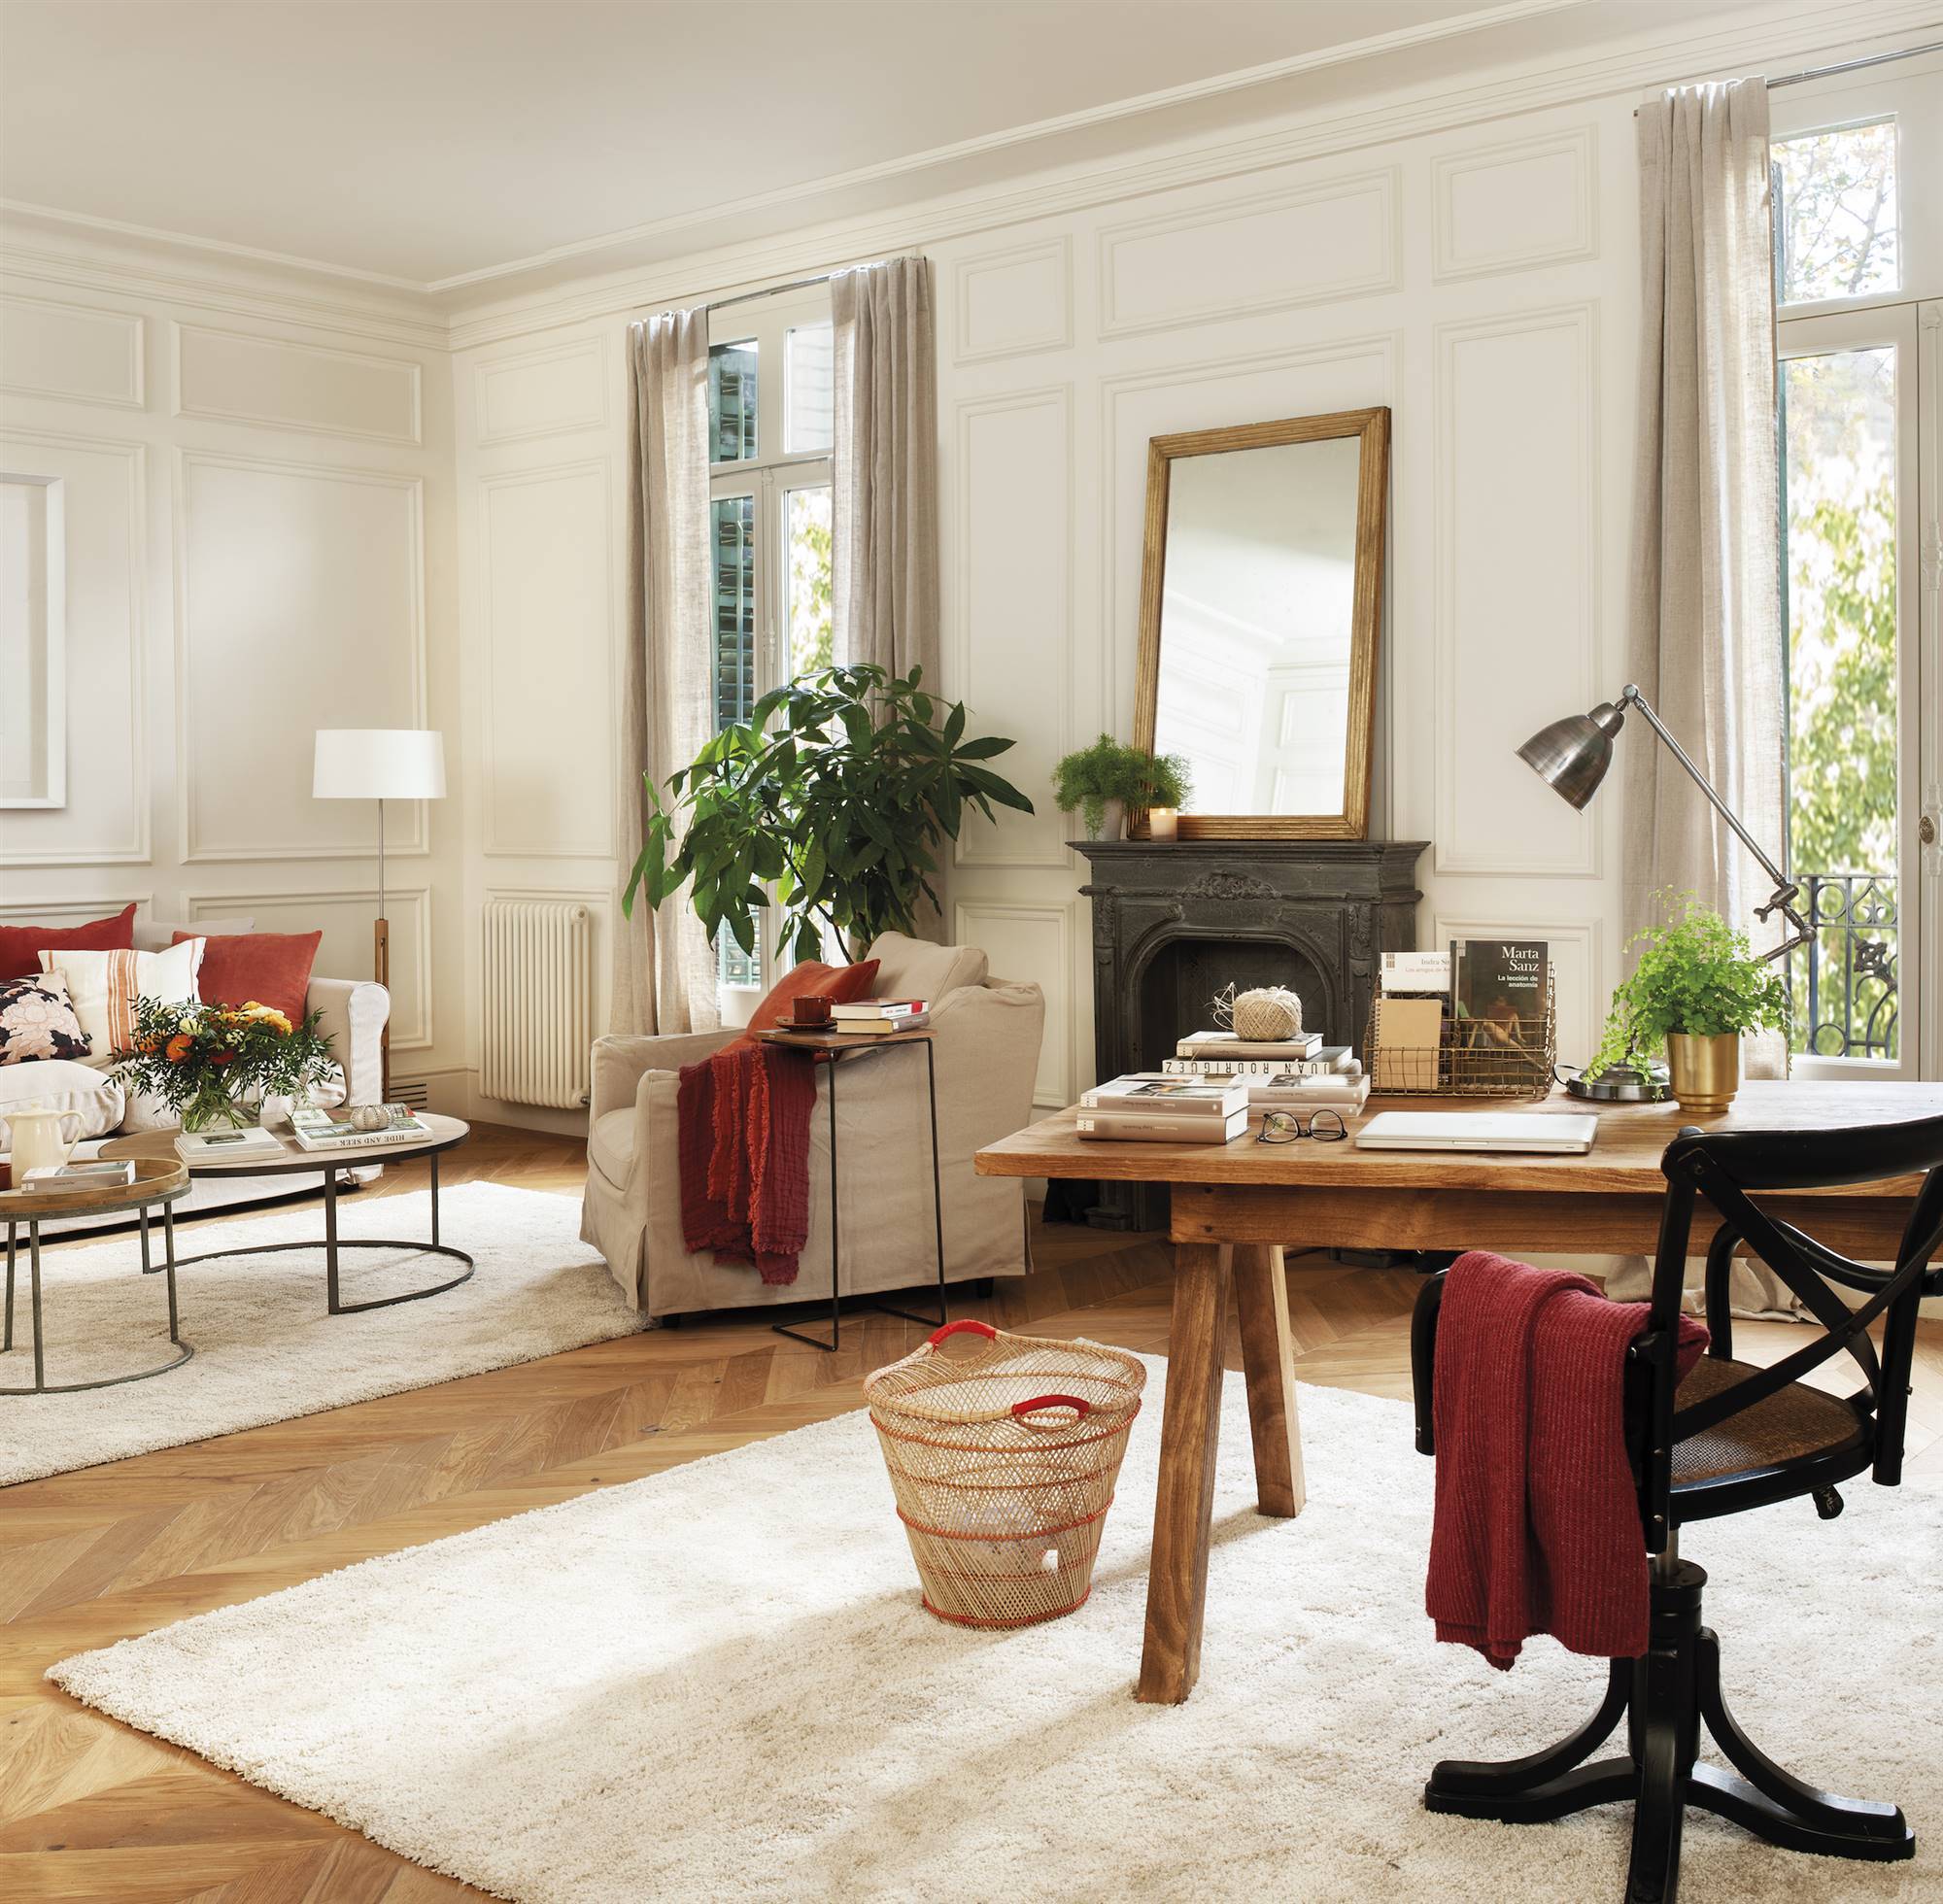 Salón de estilo clásico con chimenea y sofás beige. 